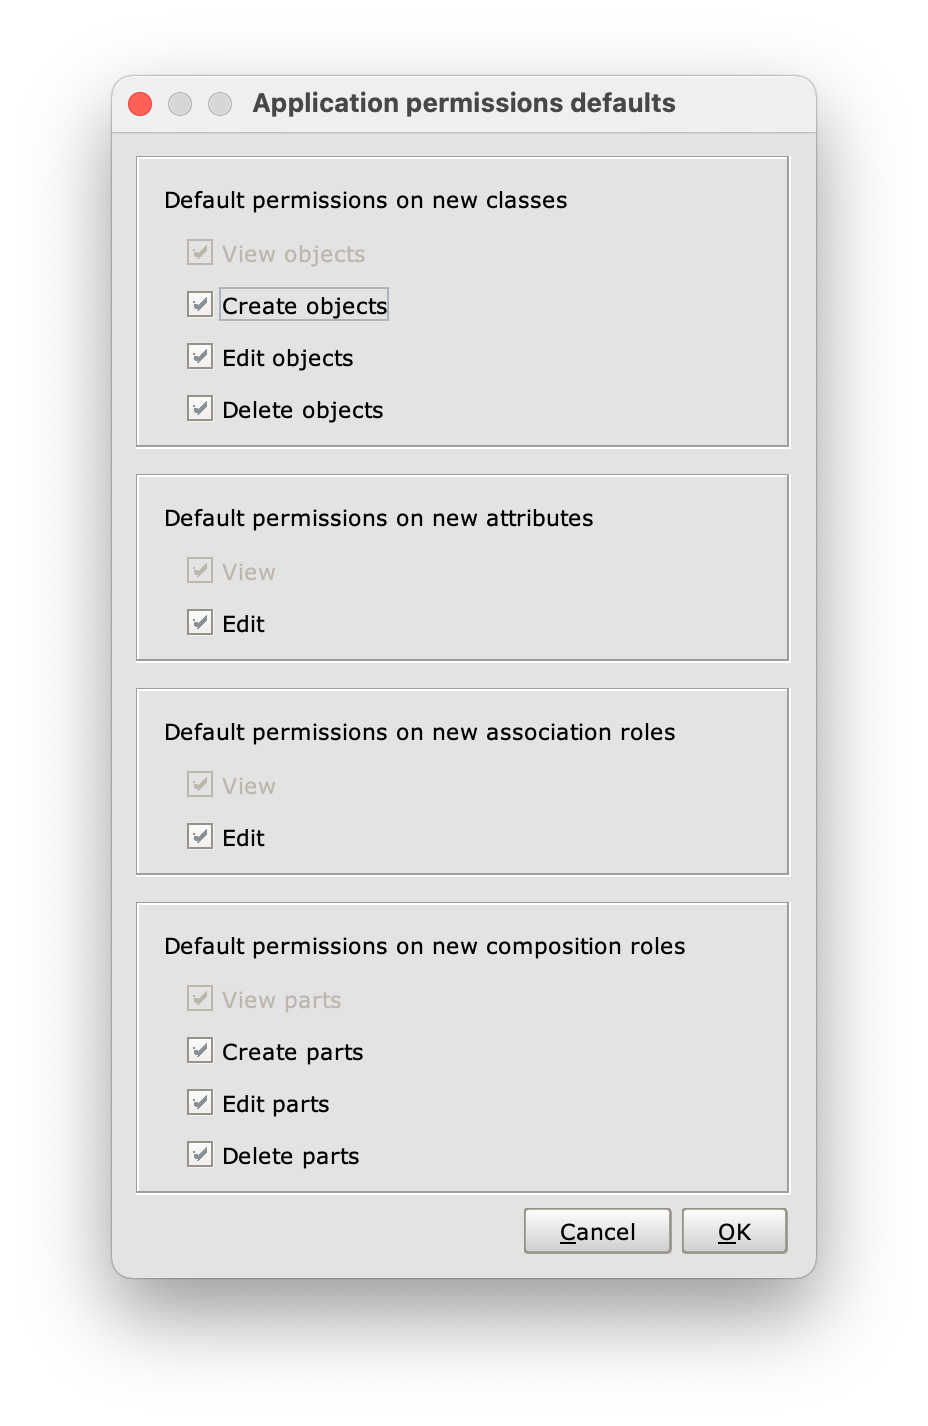 Application permissions defaults